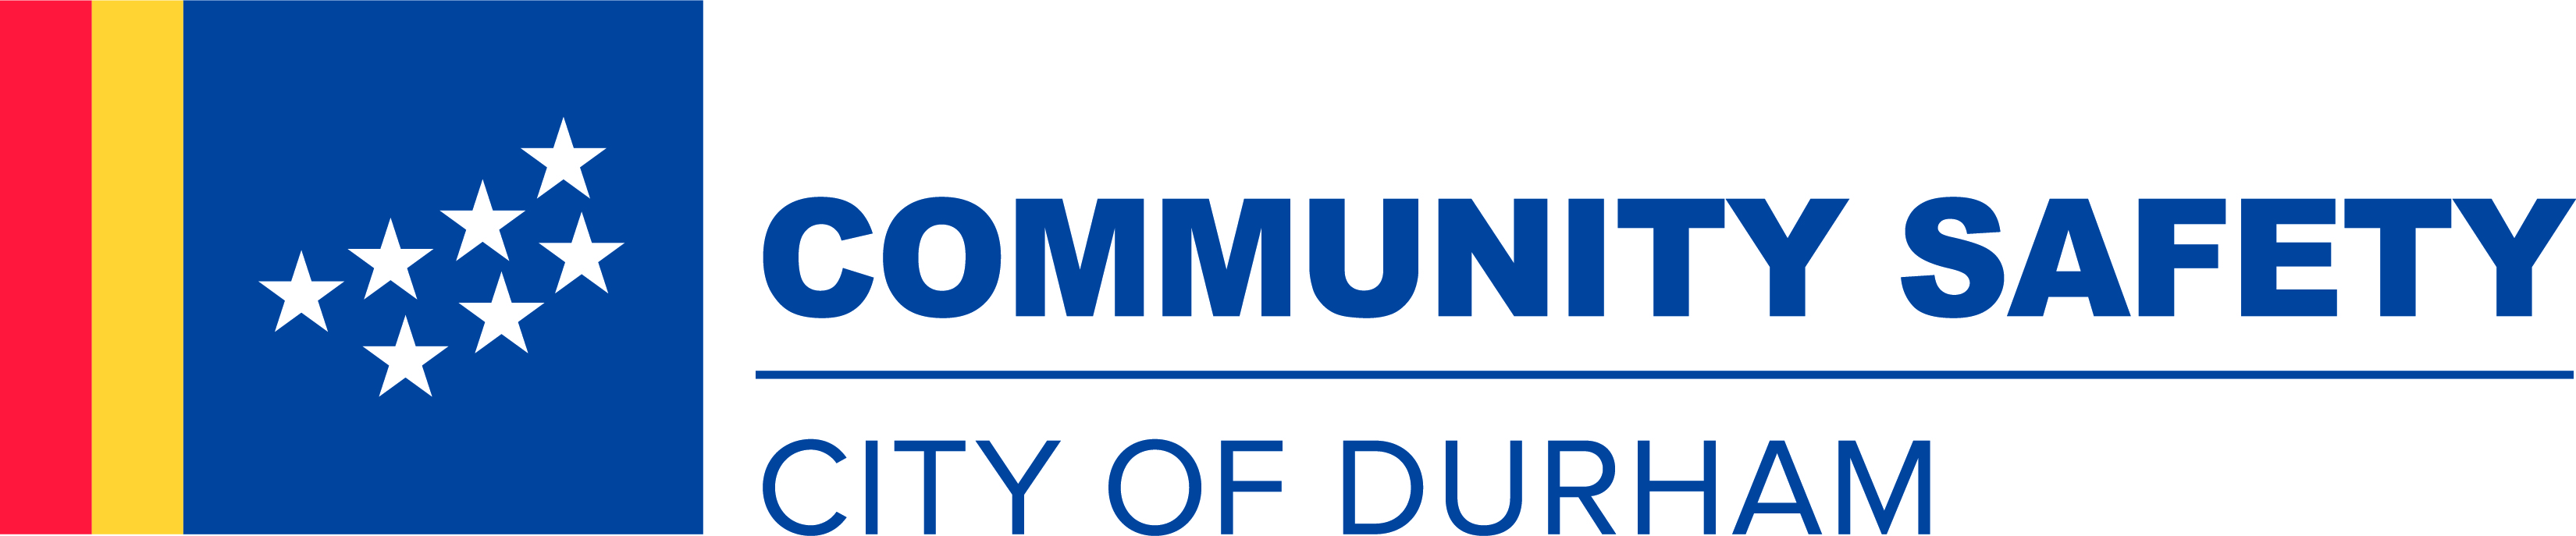 City of Durham_Community Safety Logo_PMS.jpg